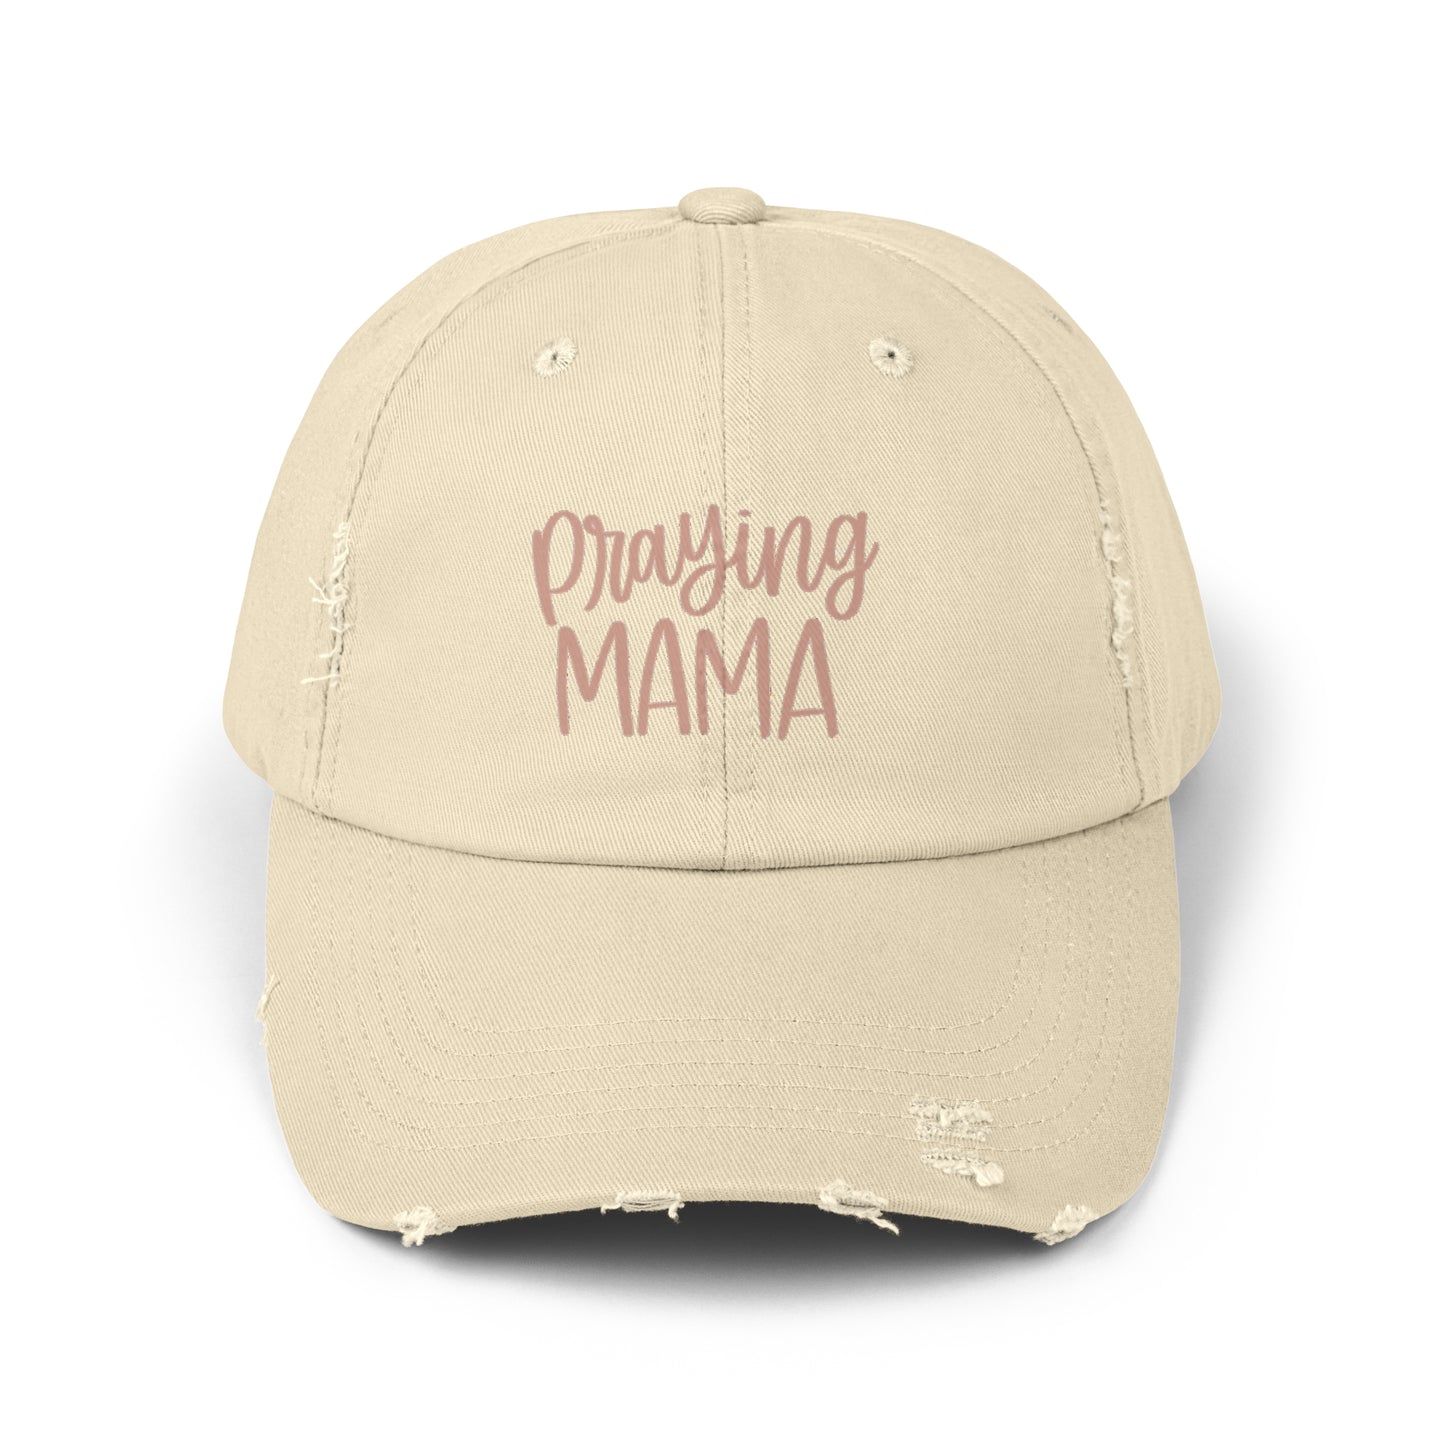 Praying Mama Hat